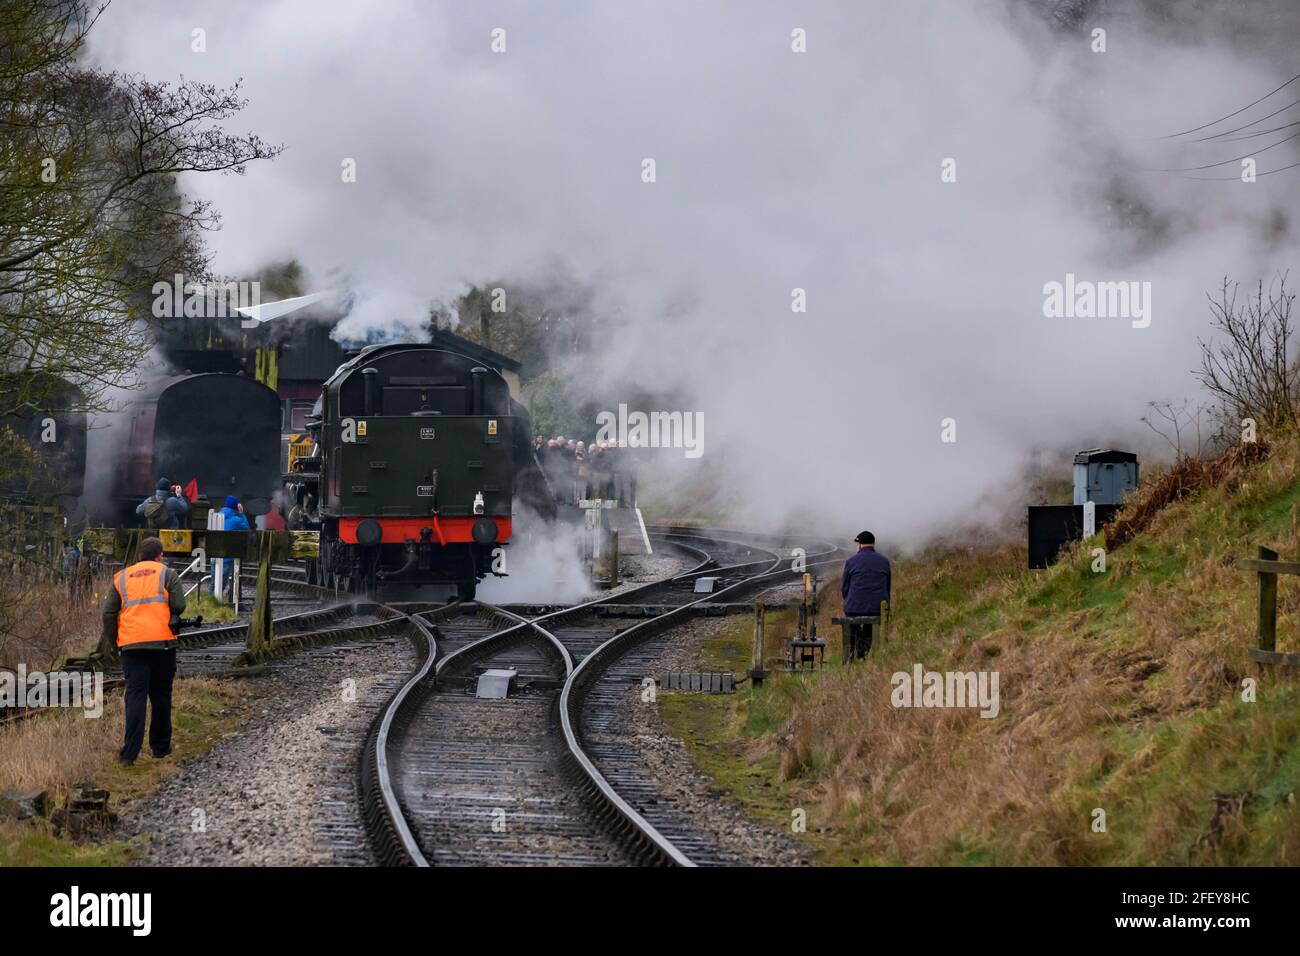 Historische Dampfeisenbahn oder Lok, die Rauchwolken aufblähen (Eisenbahner an den Punkten, Enthusiasten beobachten) - Oxenhope Station Sidings, Yorkshire England Großbritannien Stockfoto